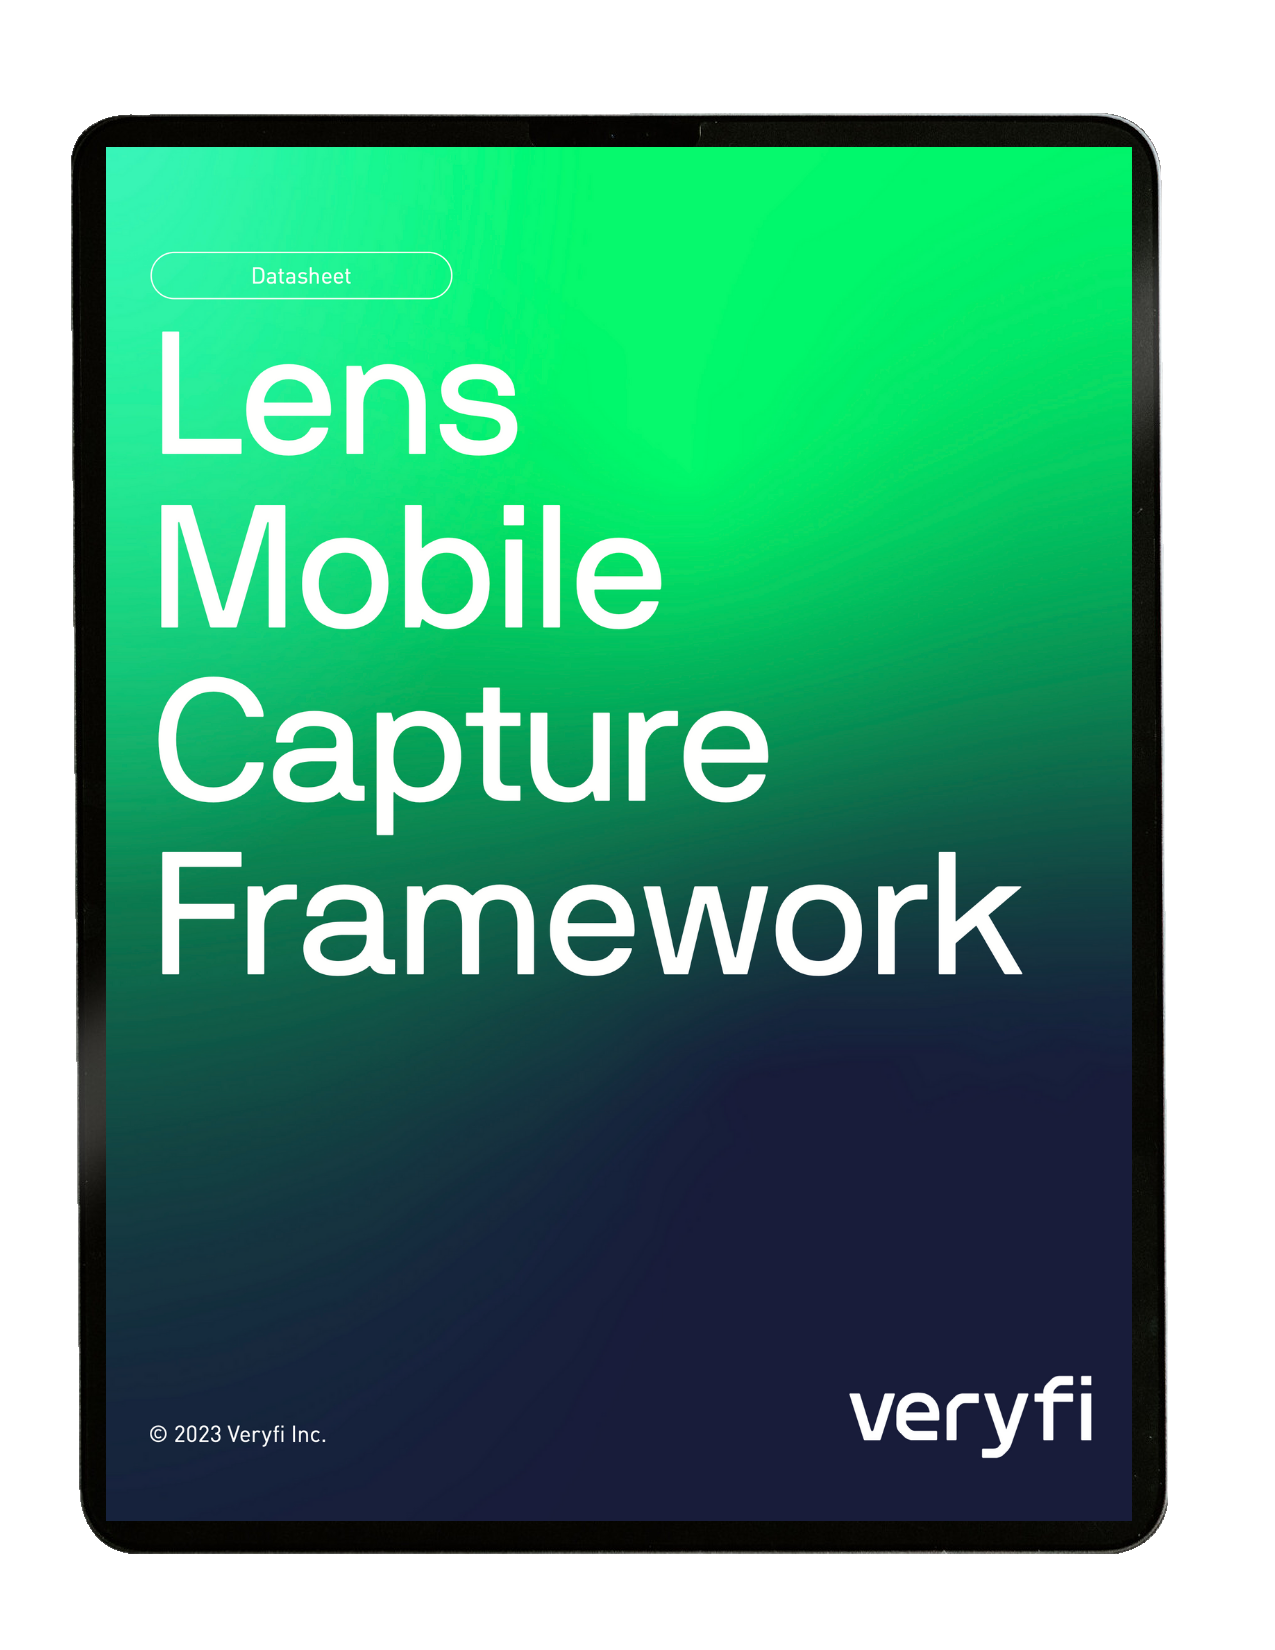 Lens Mobile Capture Framework Data Sheet